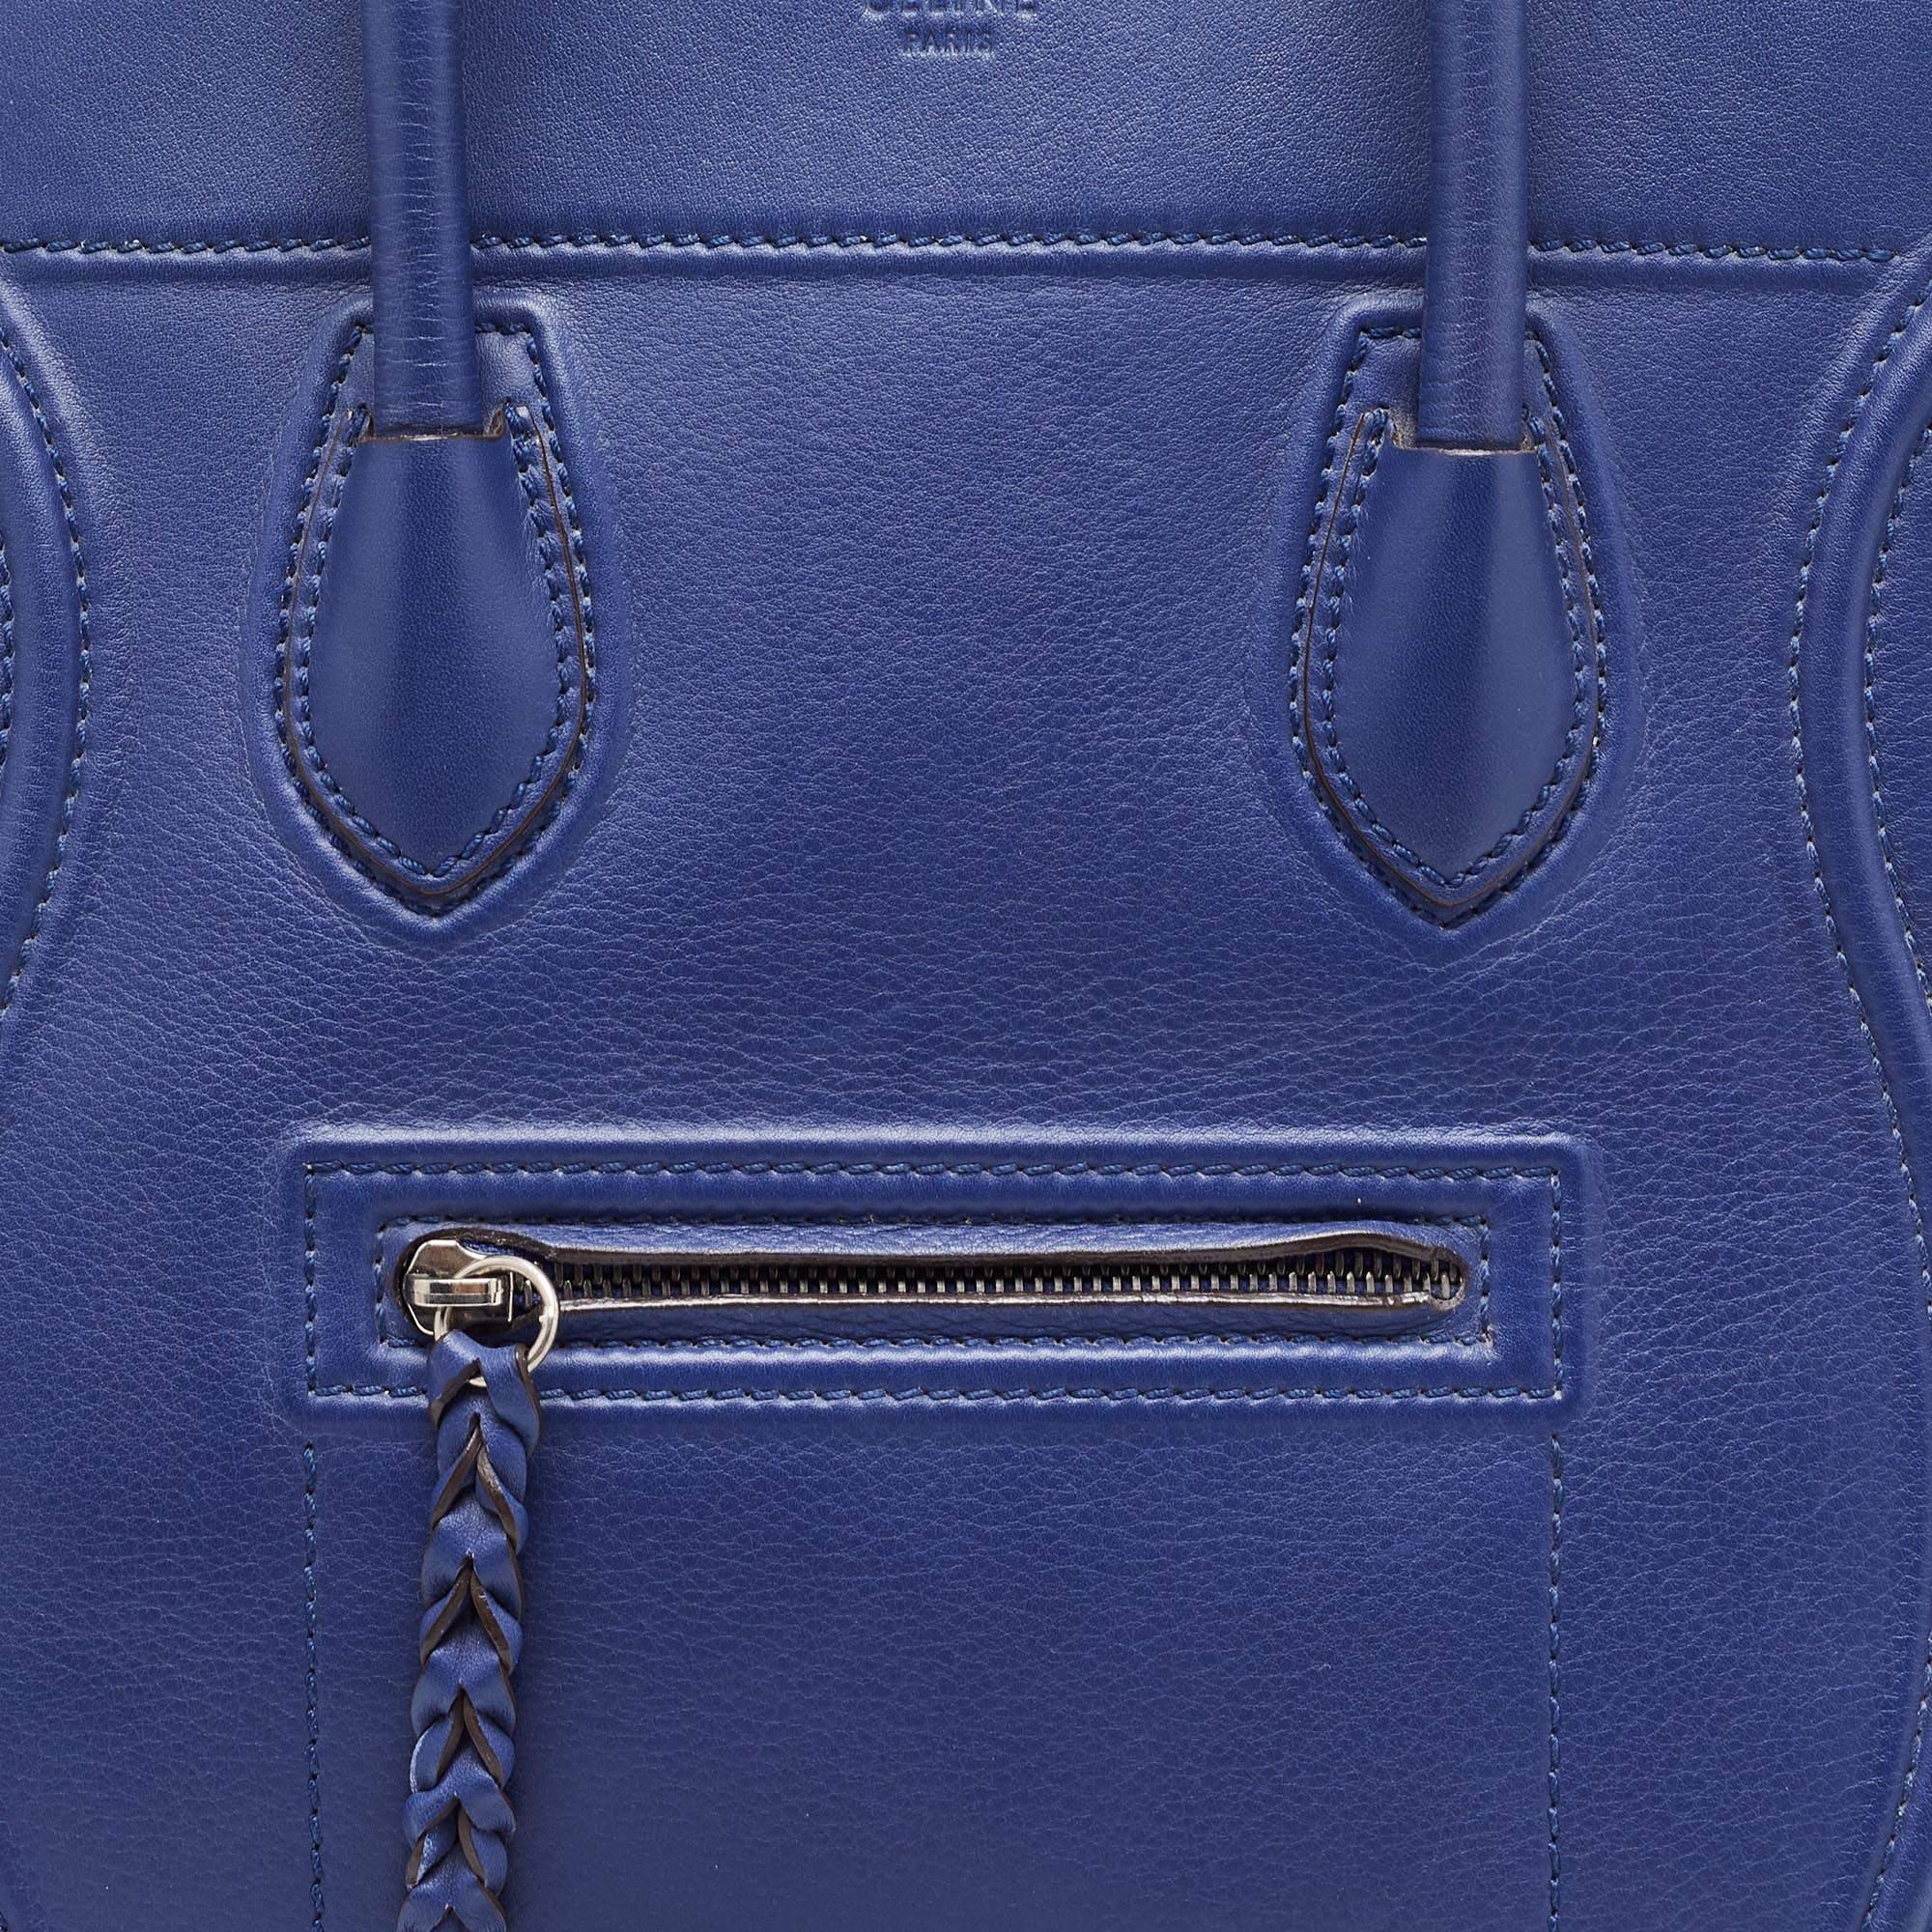 Celine Blue Leather Medium Phantom Luggage Tote 7